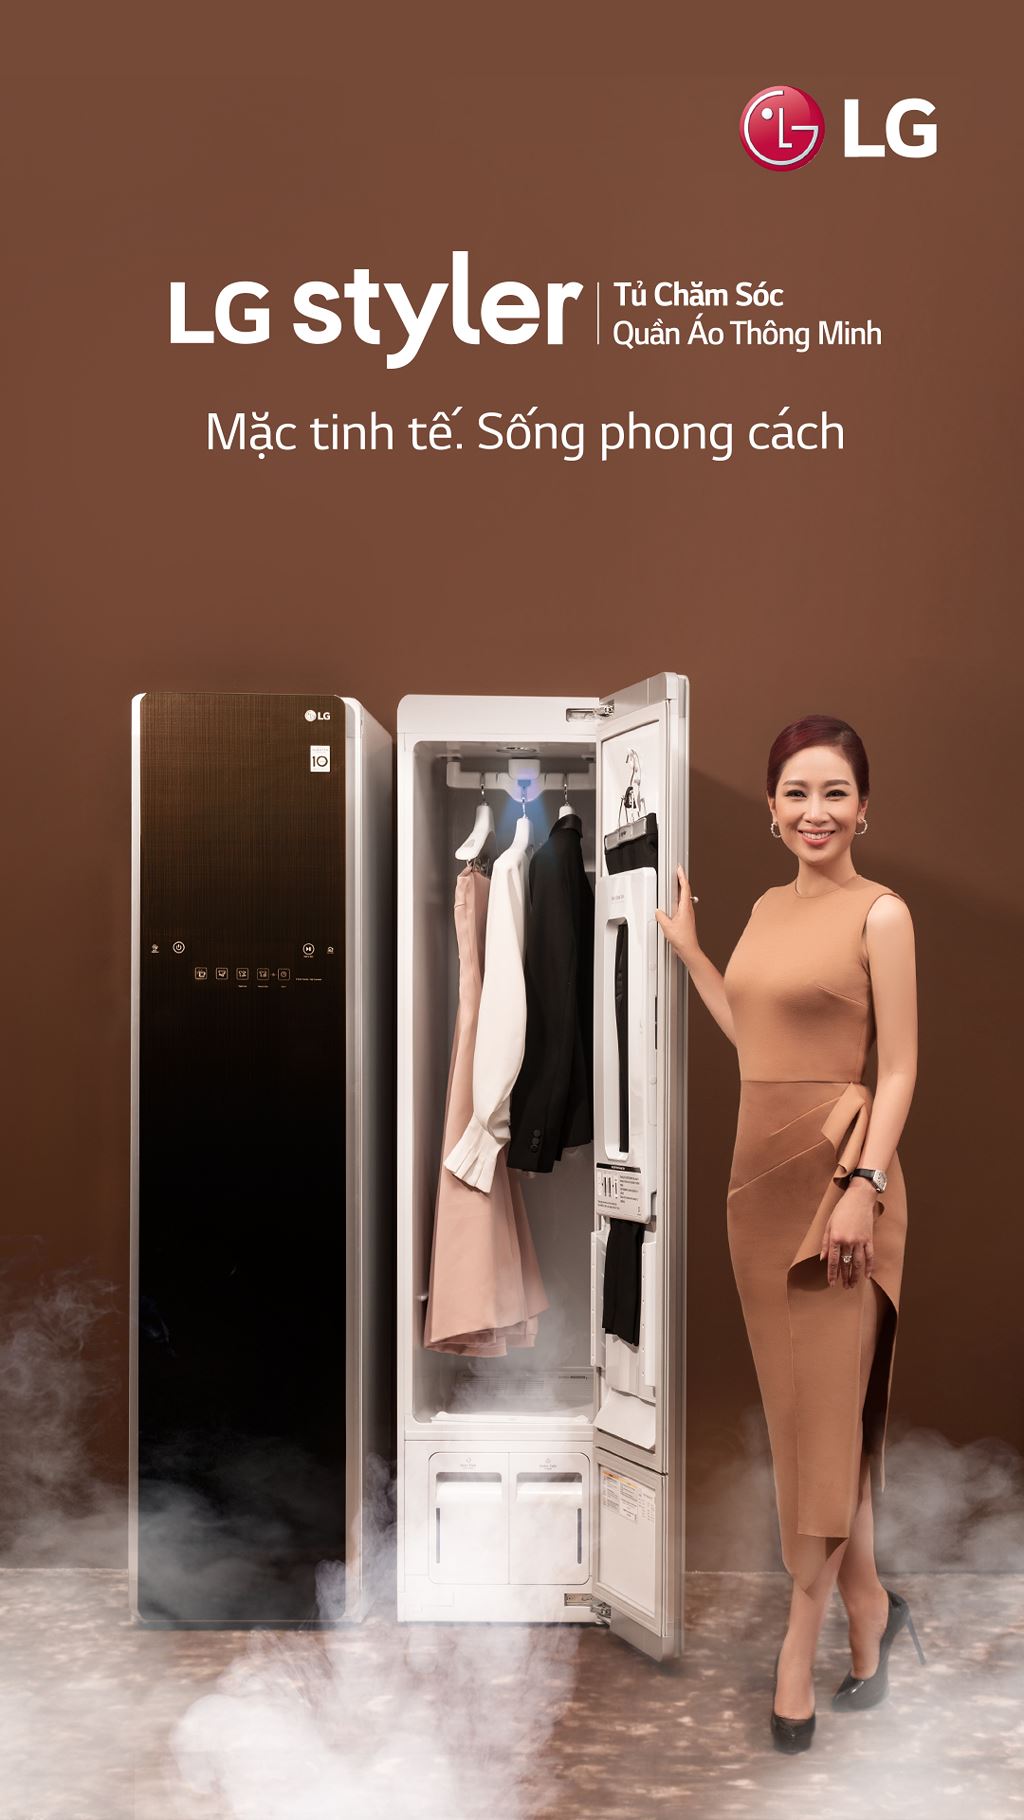 LG Styler tủ chăm sóc quần áo thông minh đầu tiên về Việt Nam giá 50 triệu ảnh 3